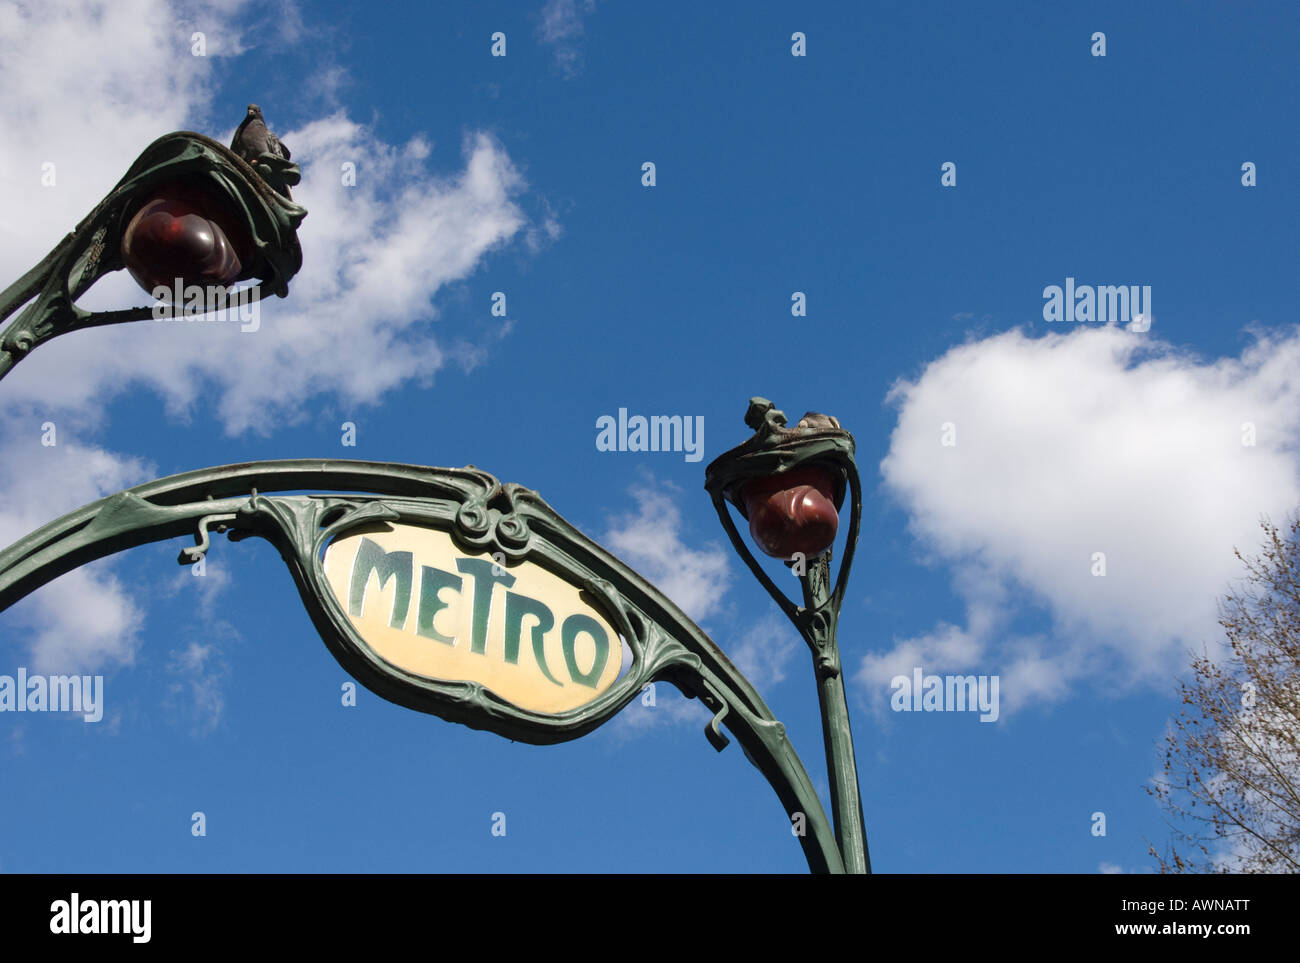 Frankreich Paris Metro-Station Nahaufnahme von traditionellen u-Bahn Schild am Eingang der Station mit blauen Himmel und leichte Wolken in bkgd Stockfoto